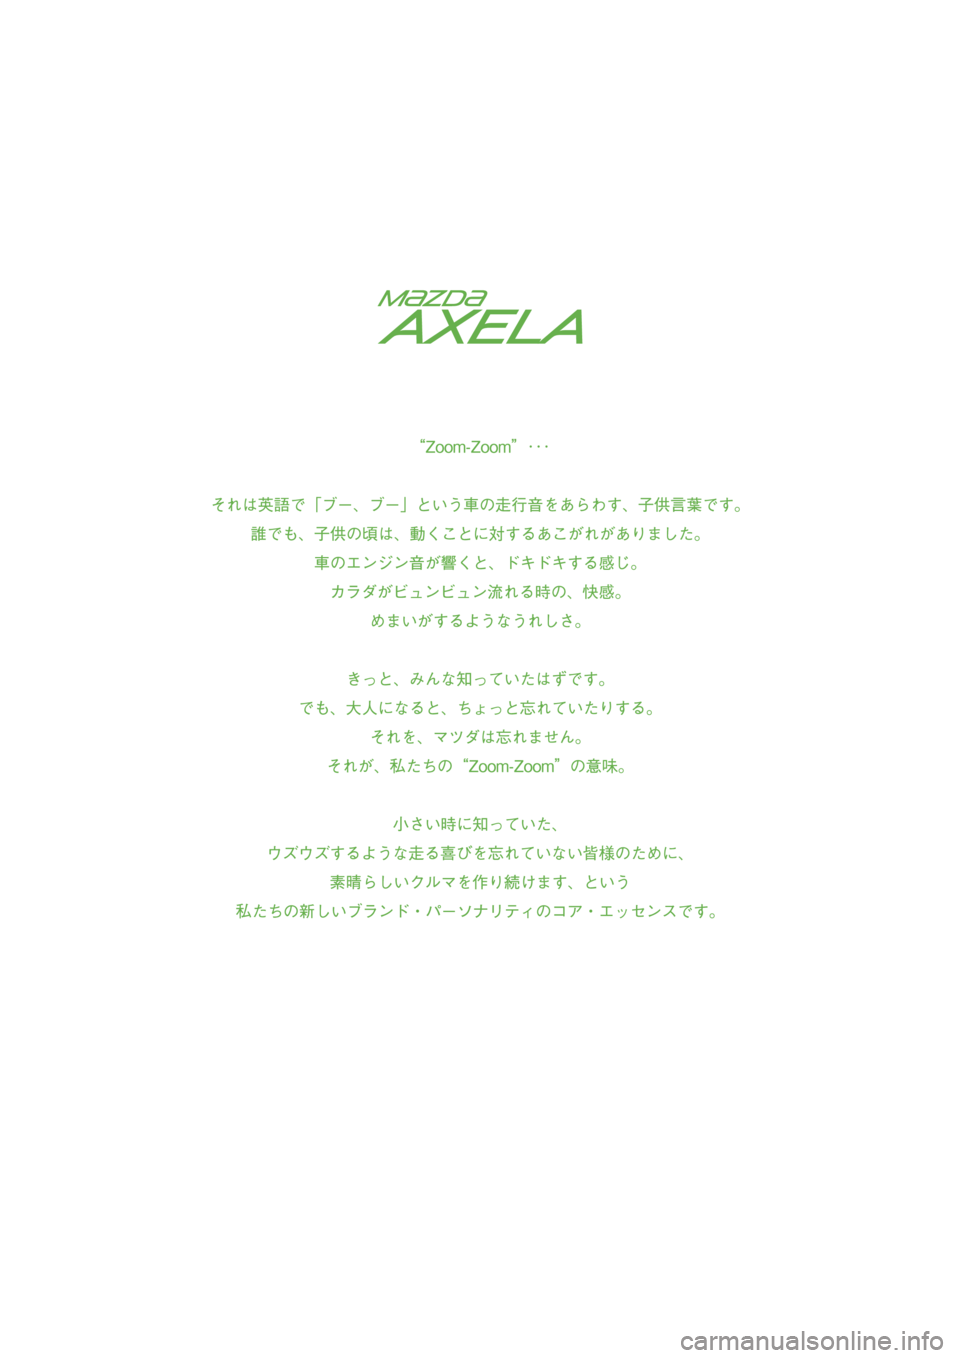 MAZDA MODEL AXELA 2016  アクセラ｜取扱説明書 (in Japanese) �#�:��.�#�A�$.�A��F�K�V�K�Q�P��A�3�W�K�E�M�)�W�K�F�G��K�P�F�D�����#�:��.�#�A�$.�A��F�K�V�K�Q�P��A�3�W�K�E�M�)�W�K�F�G��K�P�F�D������������������������������